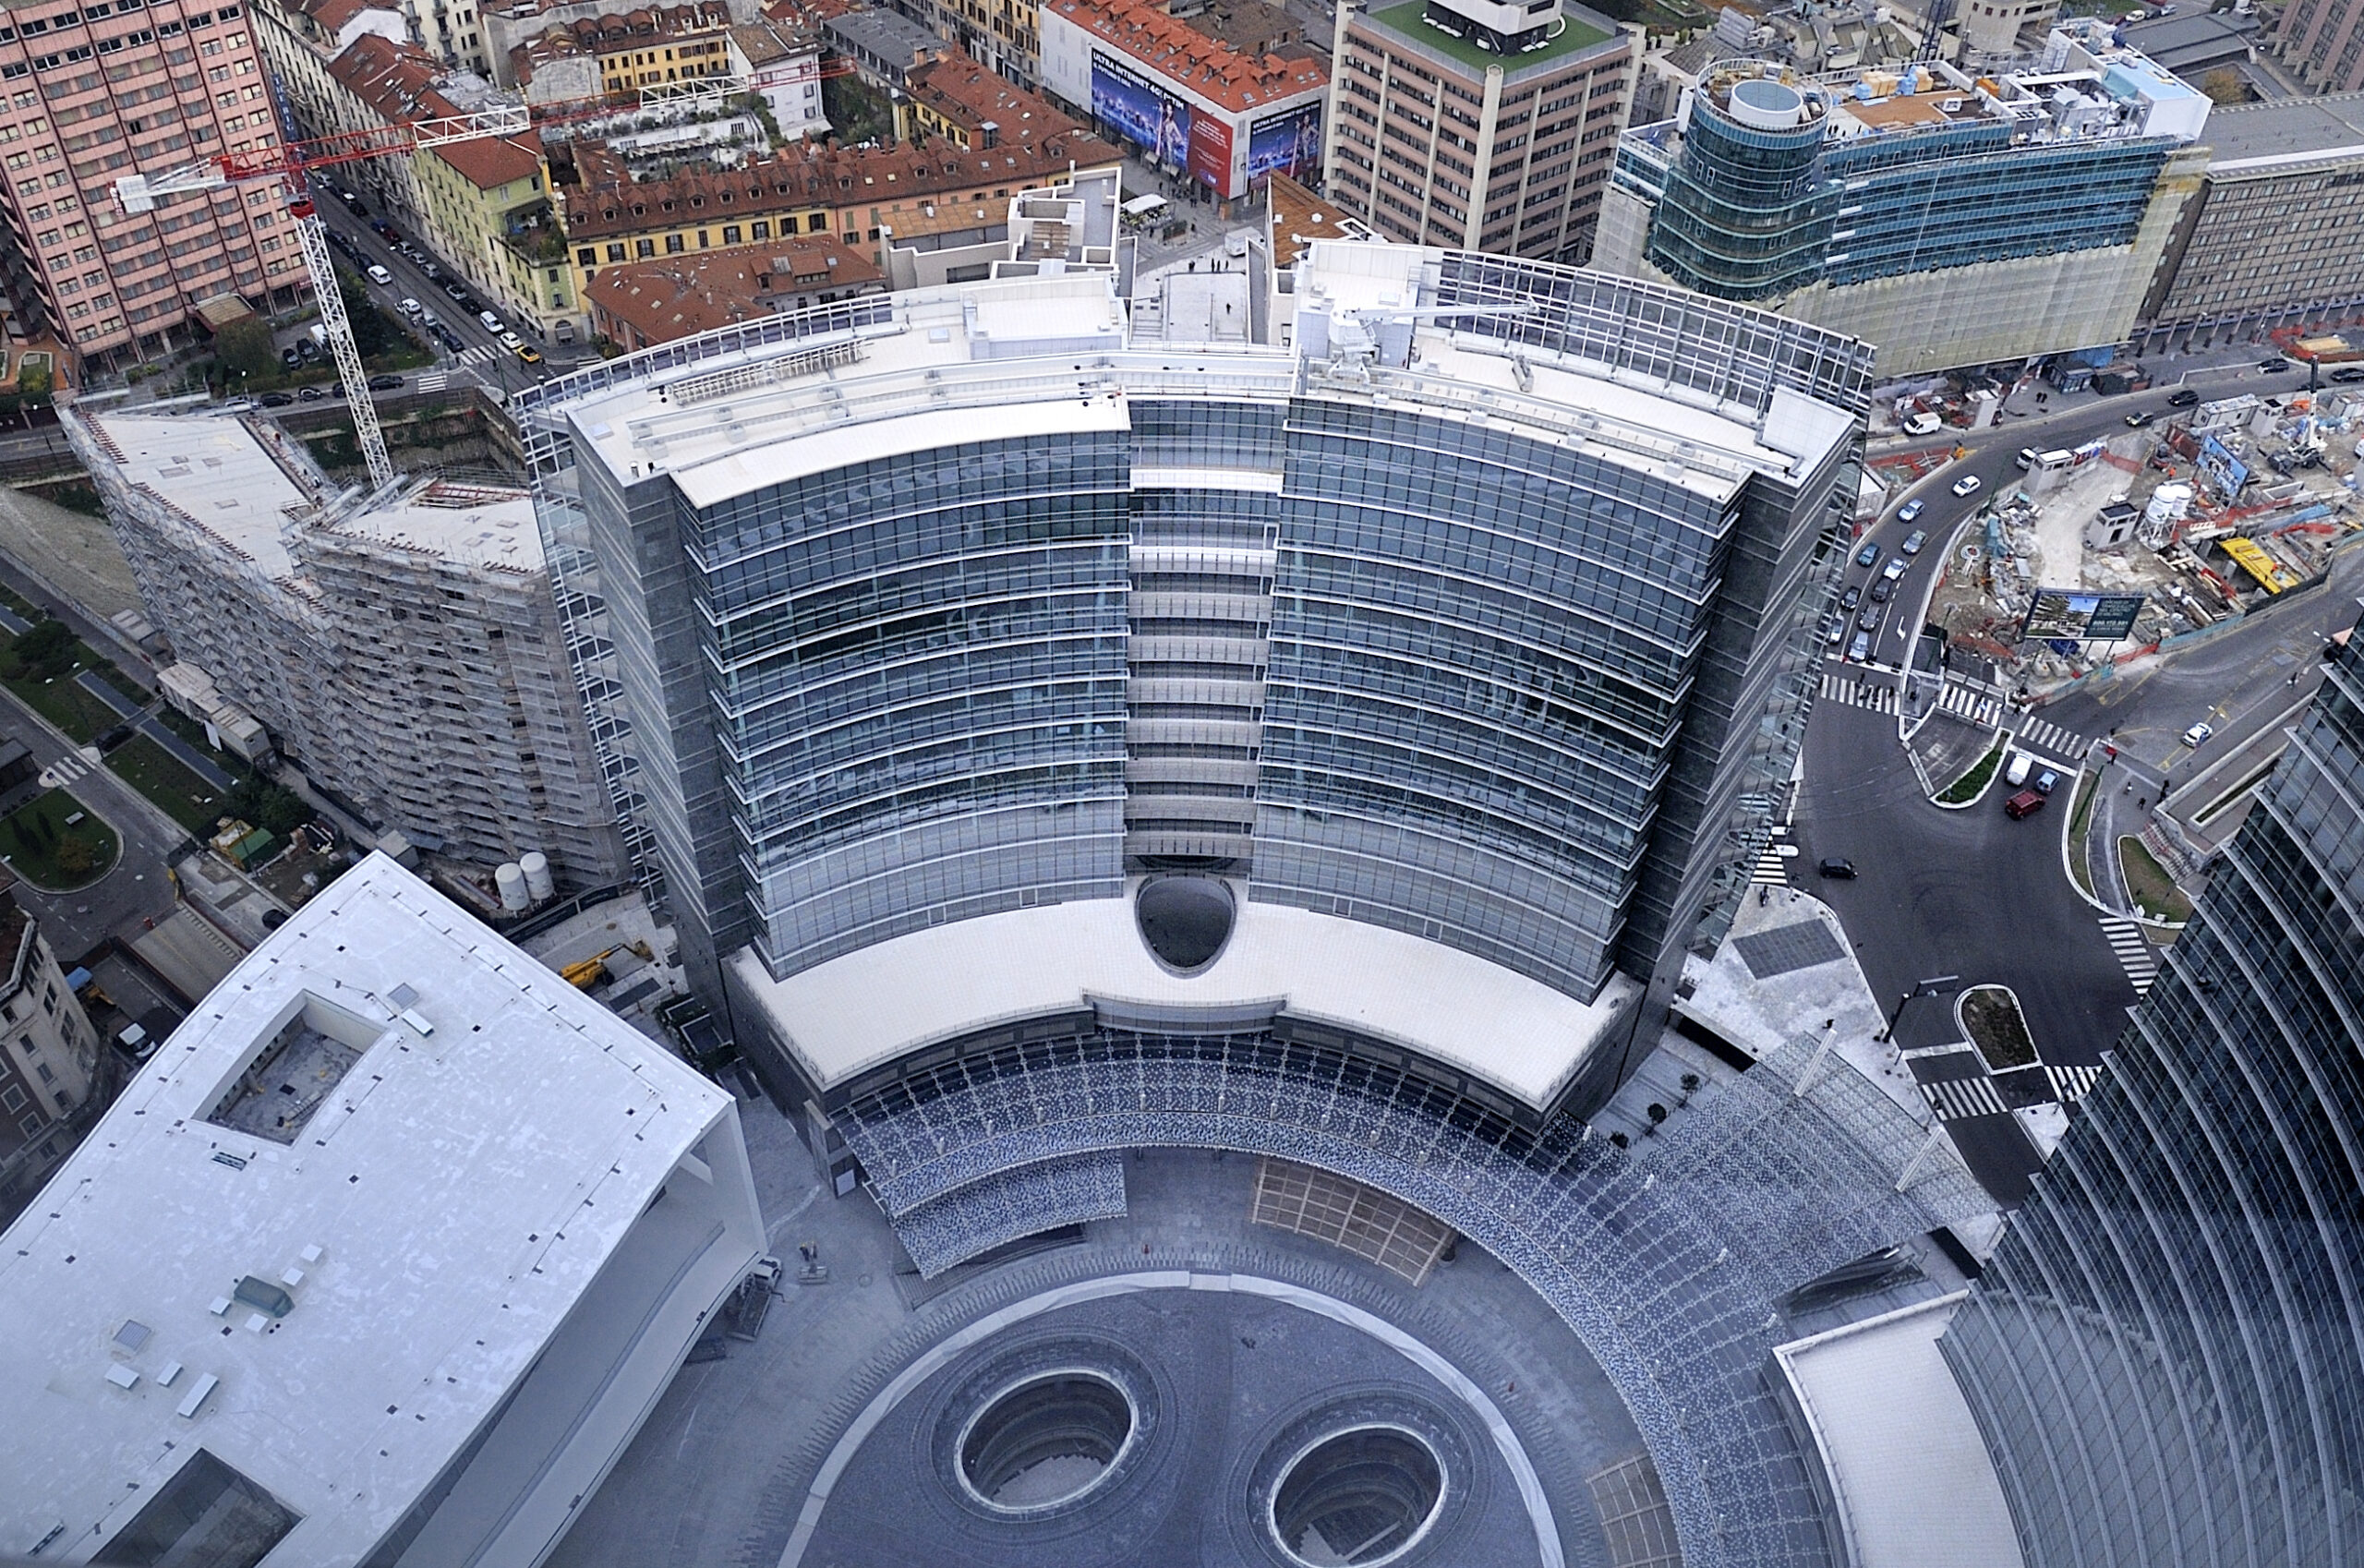 UniCreditov toranj u Milanu nositelj LEED Gold certifikata Najviša zgrada u Italiji zahvaljujući dizajnu smanjila je emisiju CO2 za više od 40% …